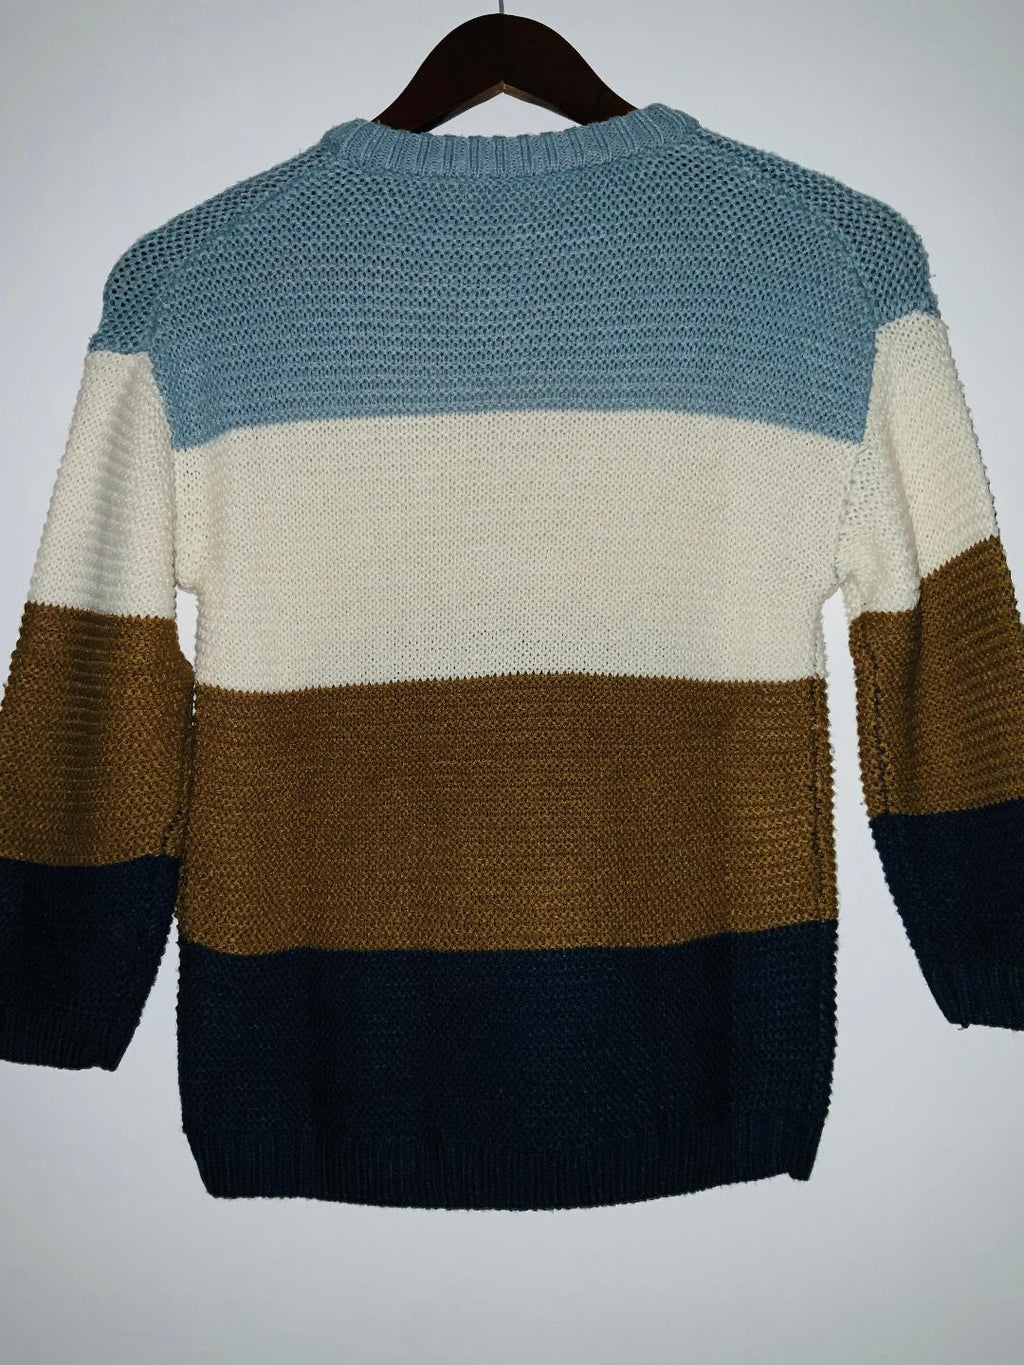 H&M Sweater para niños en bloques de color. Talla 8/10